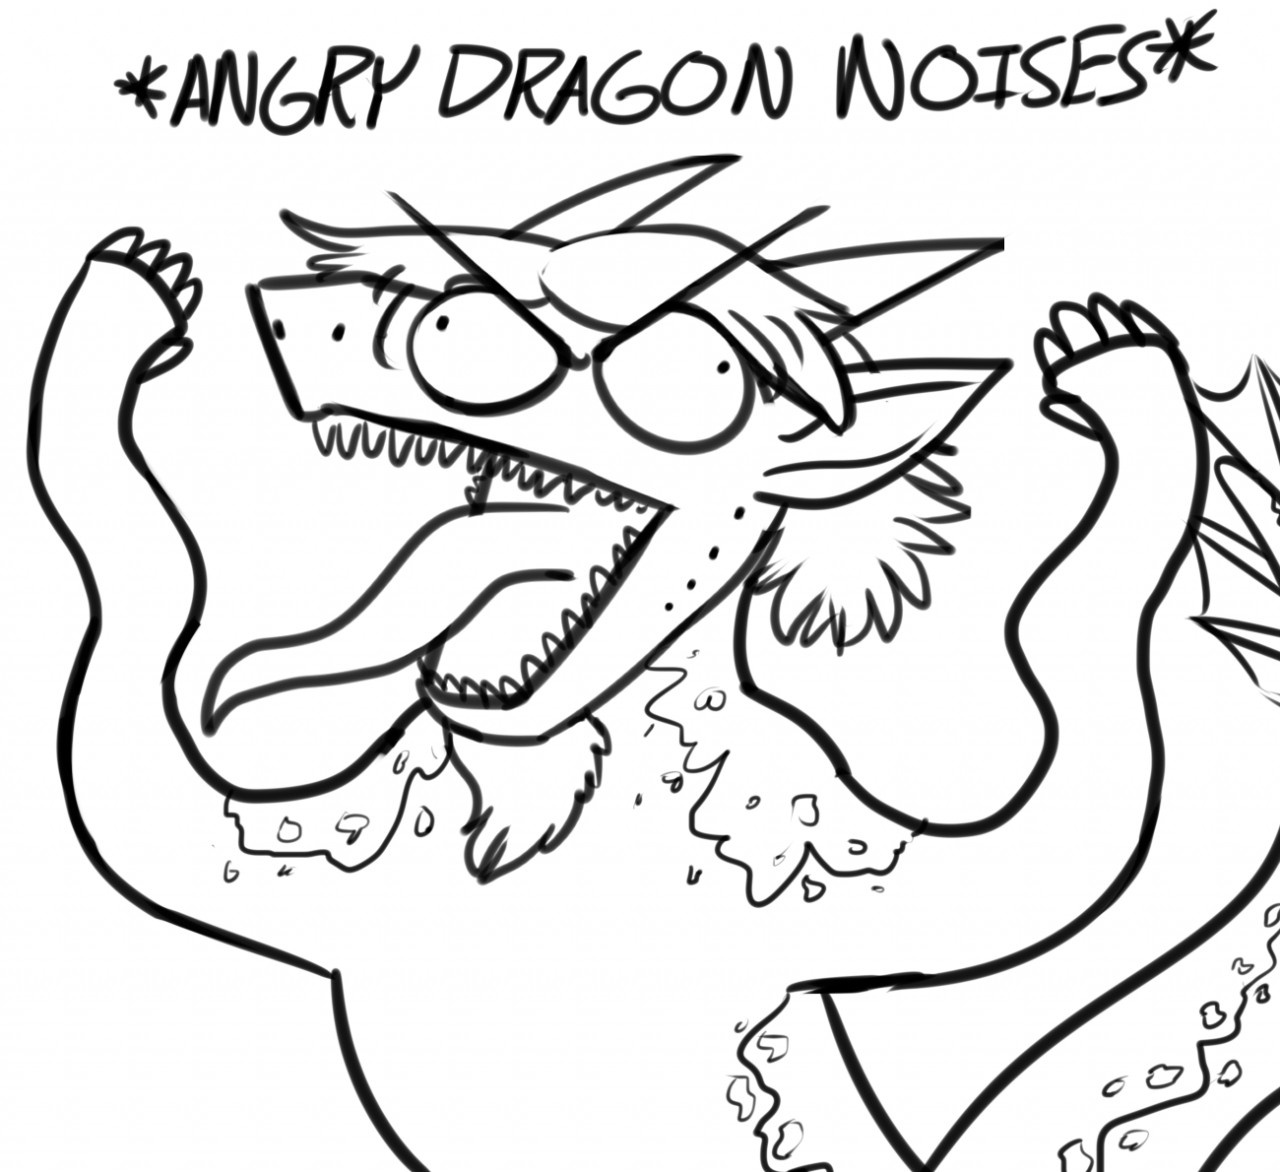 *angry dragon noises. 